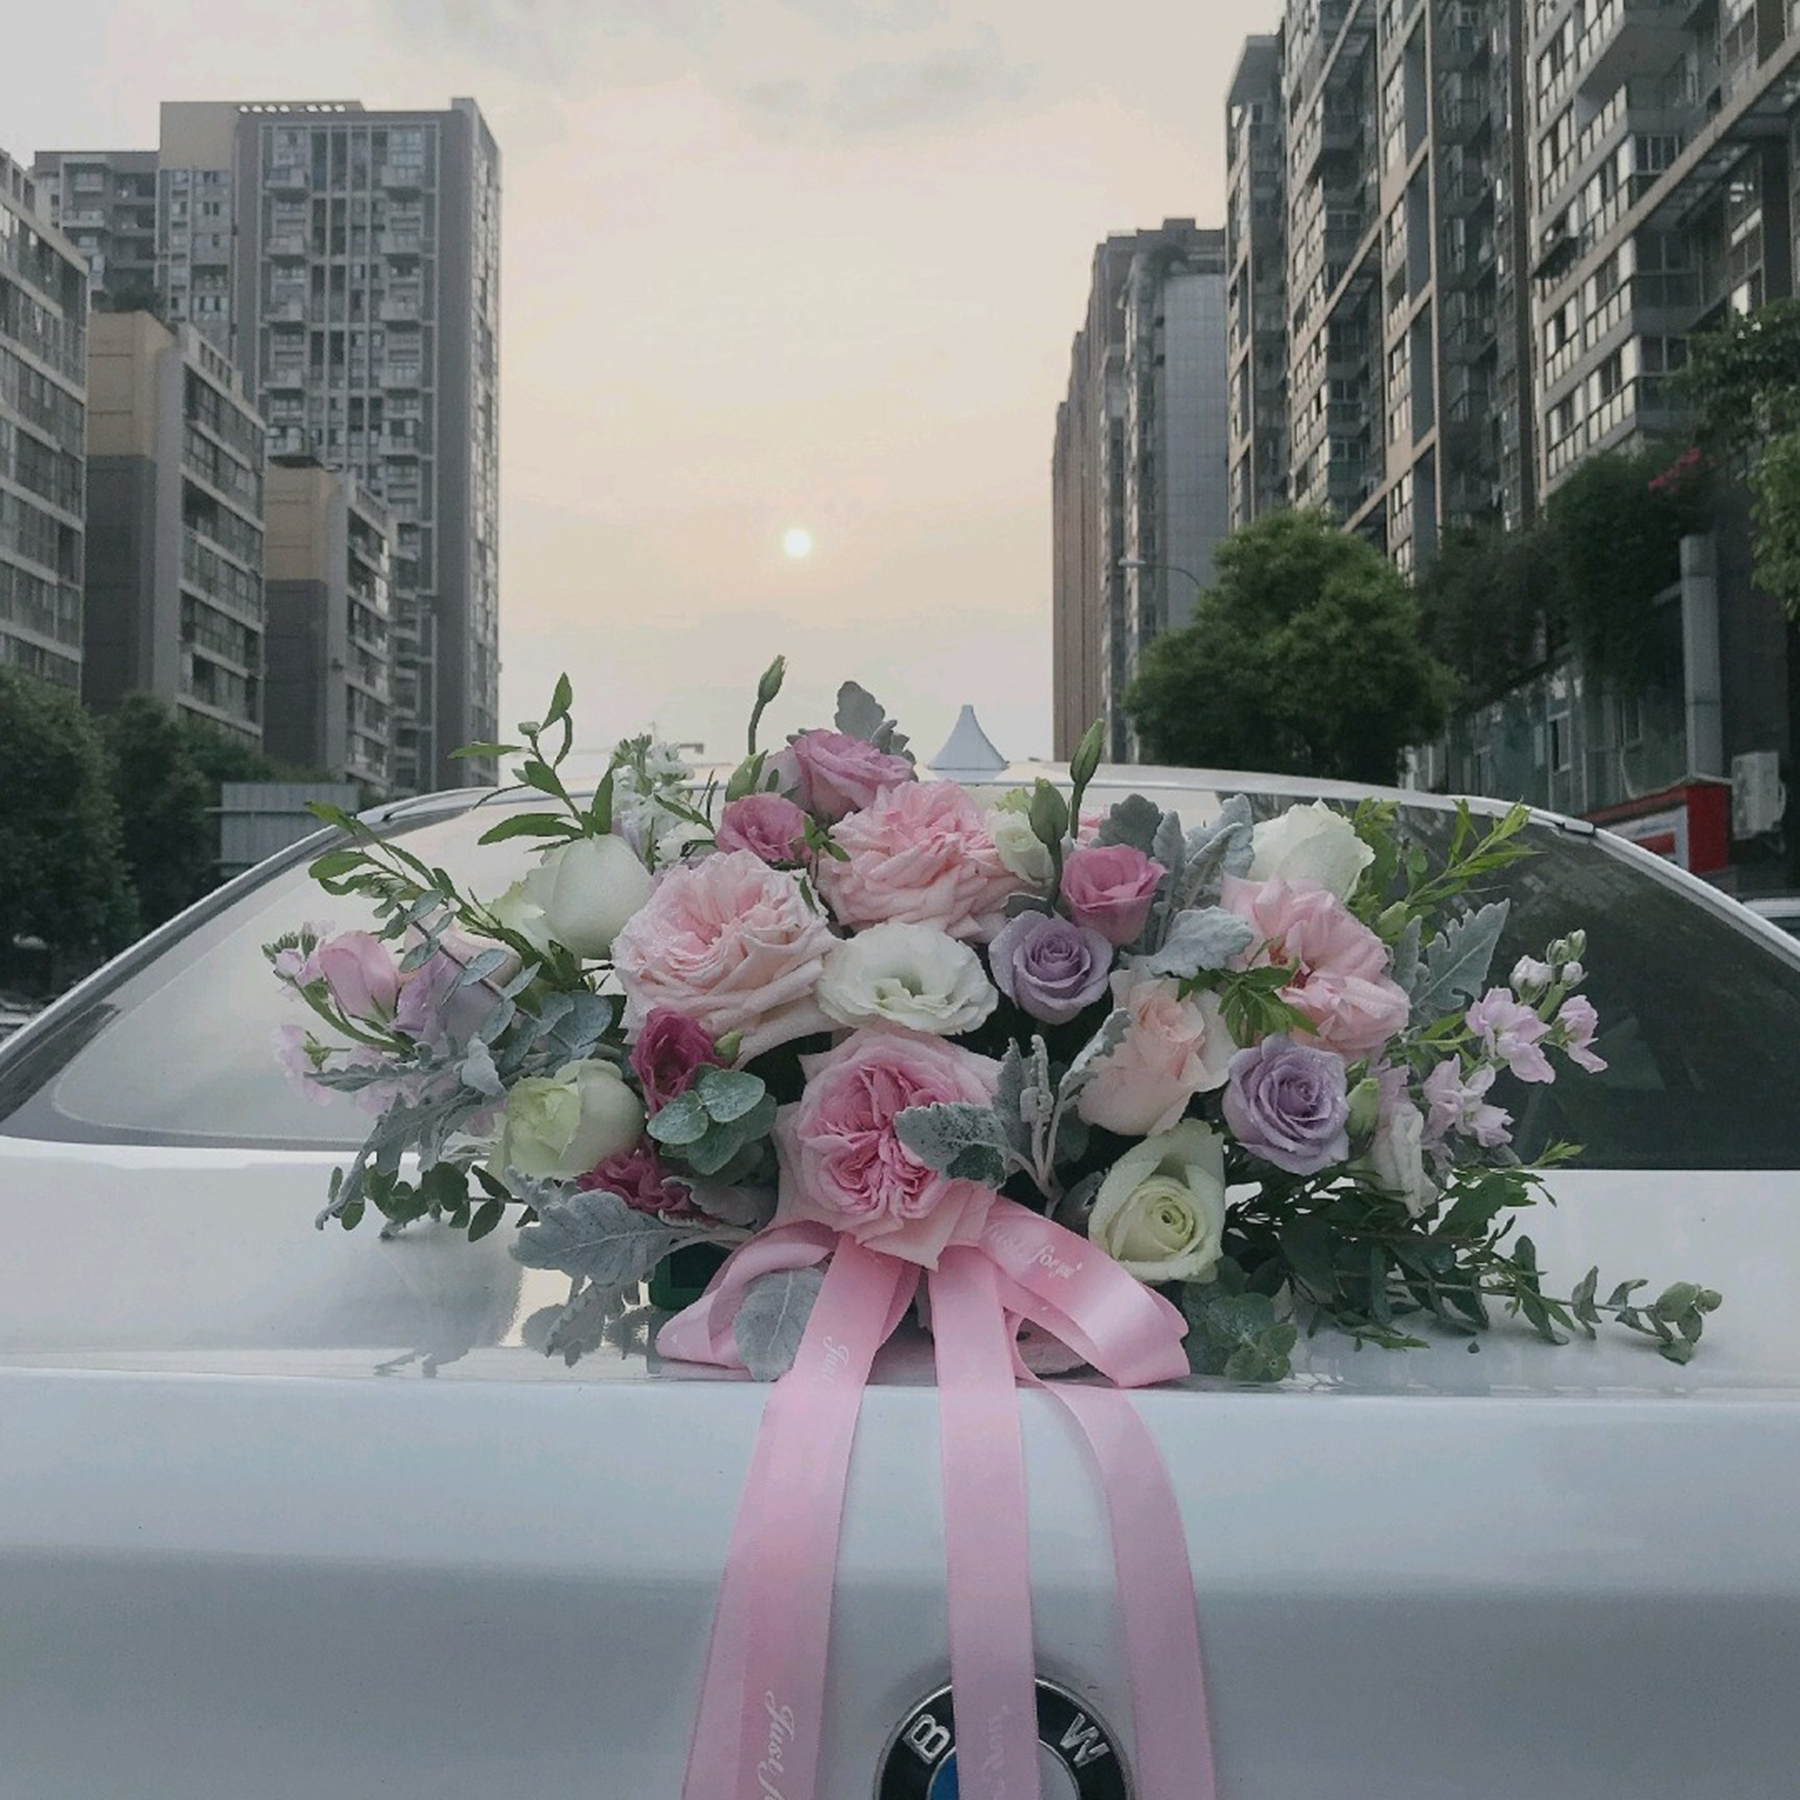 出租车车队结婚-出租车司机集体婚礼一起迈入幸福的车道